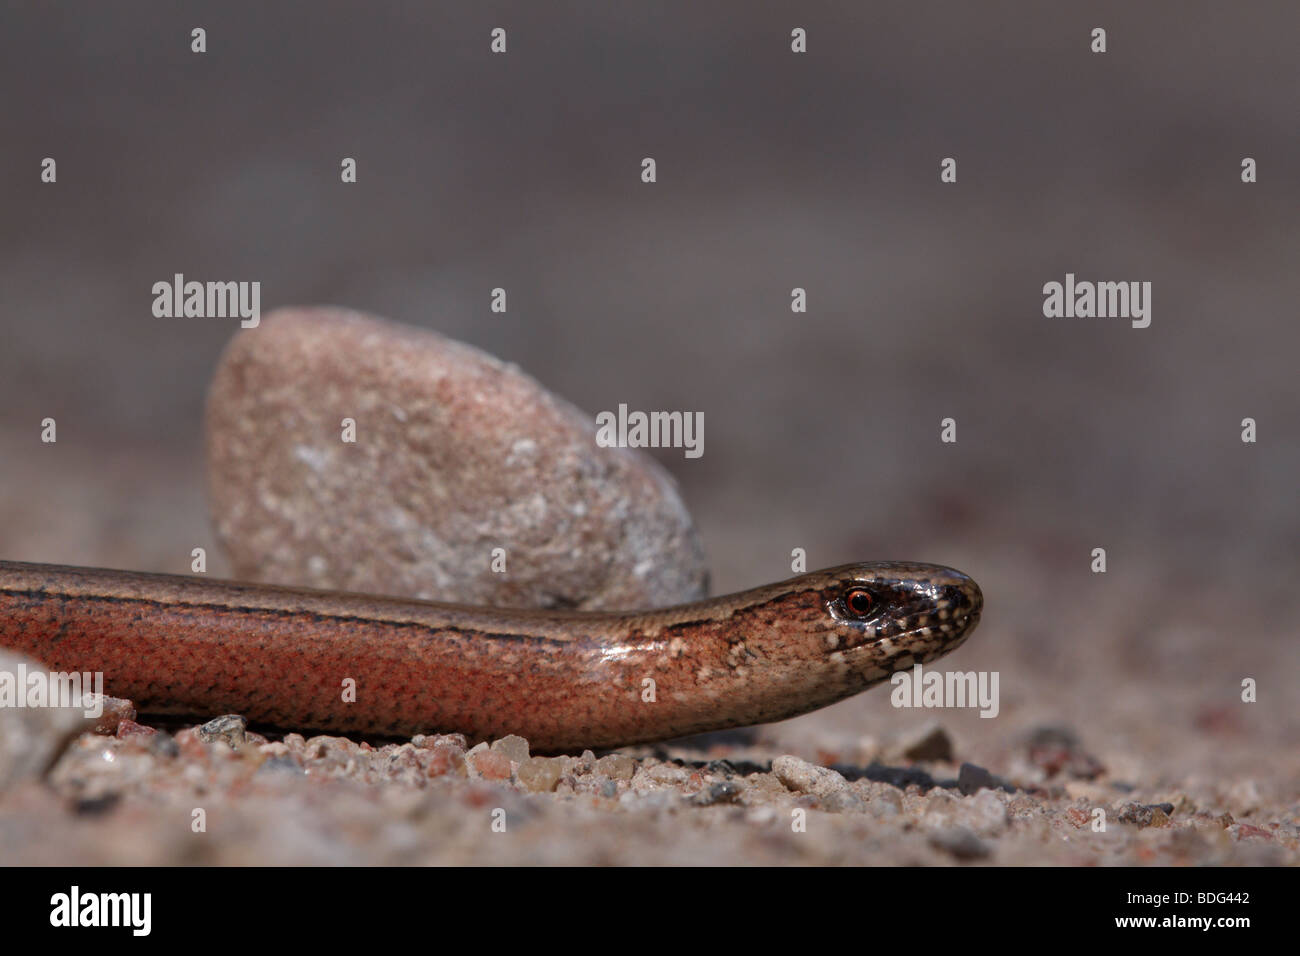 Slow worm Stock Photo